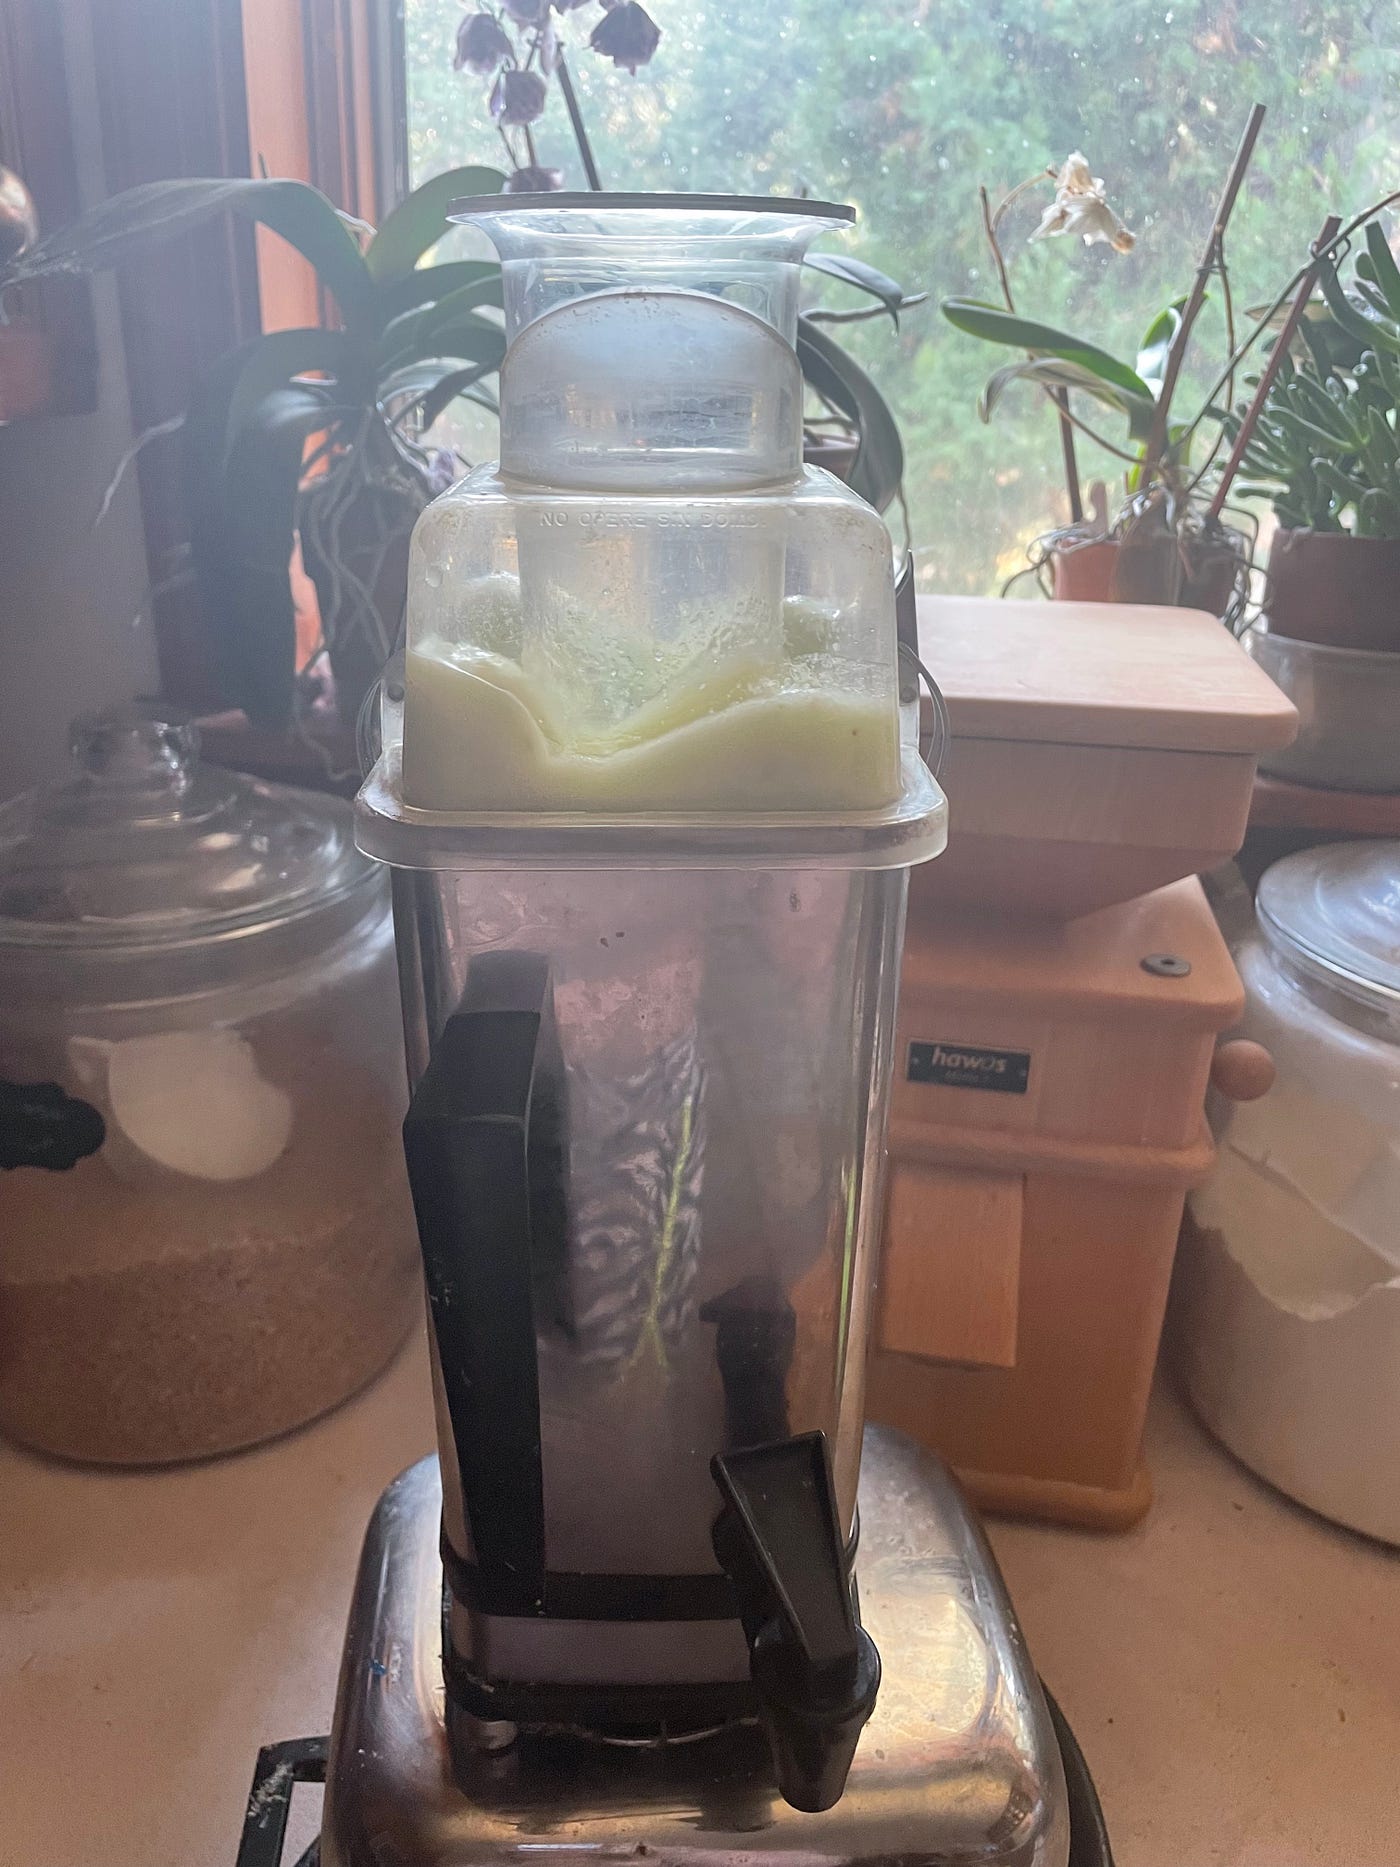 Celery juice blending in the blender on the counter.